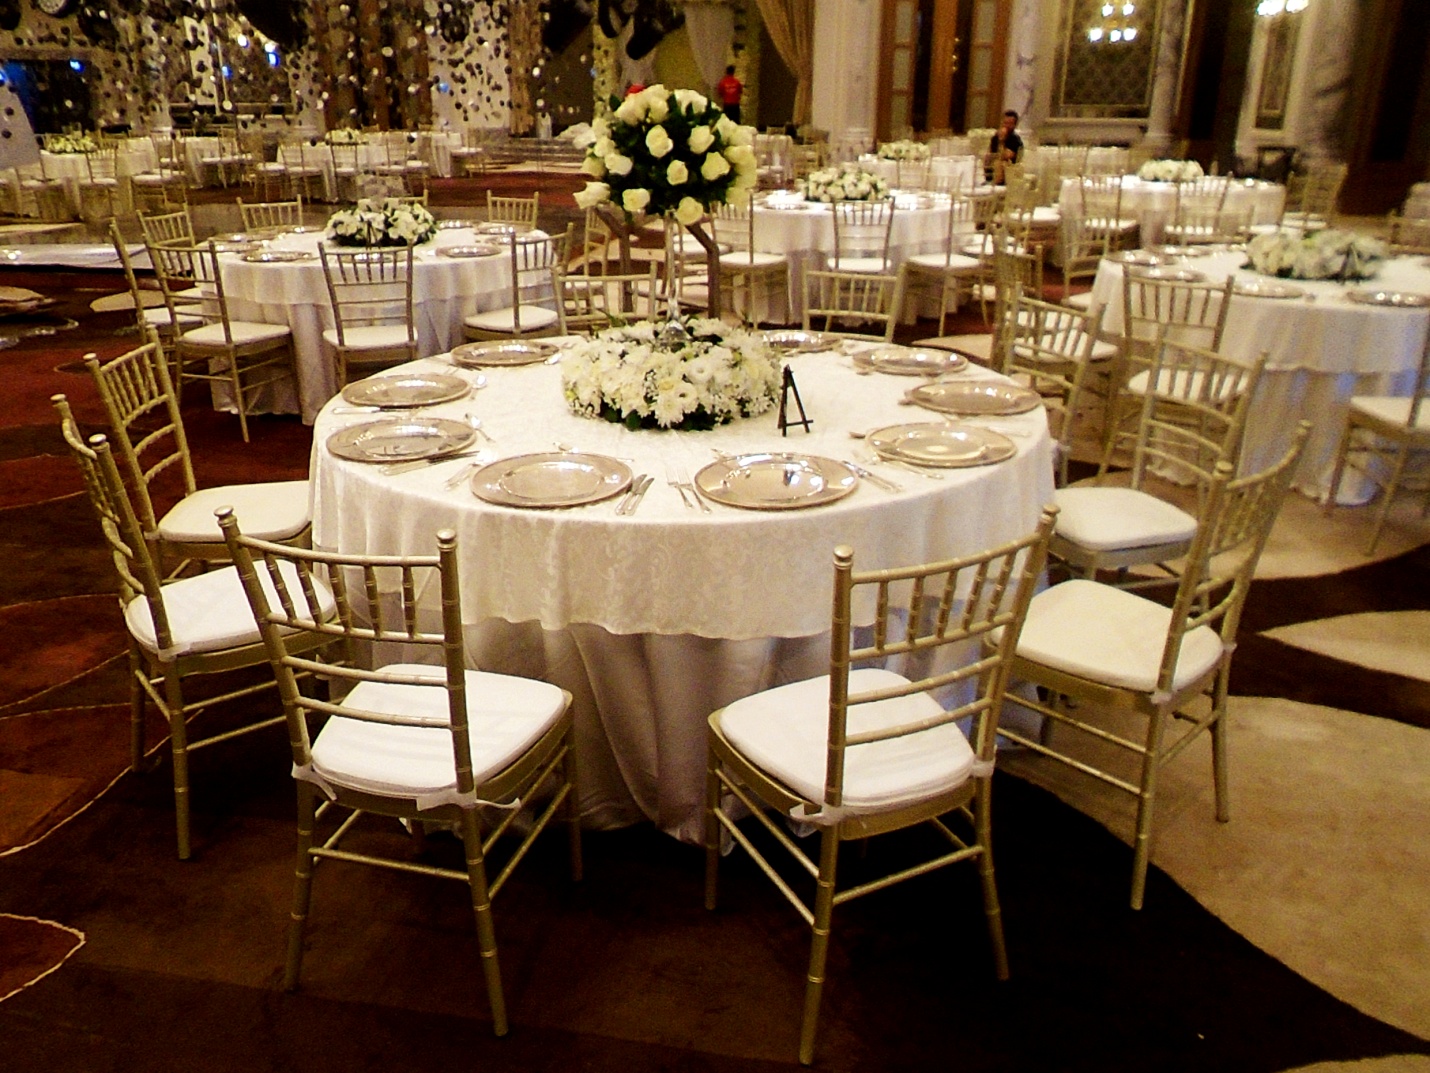 Planning a Wedding? Hire a Wedding Furniture Rental Company in UAE